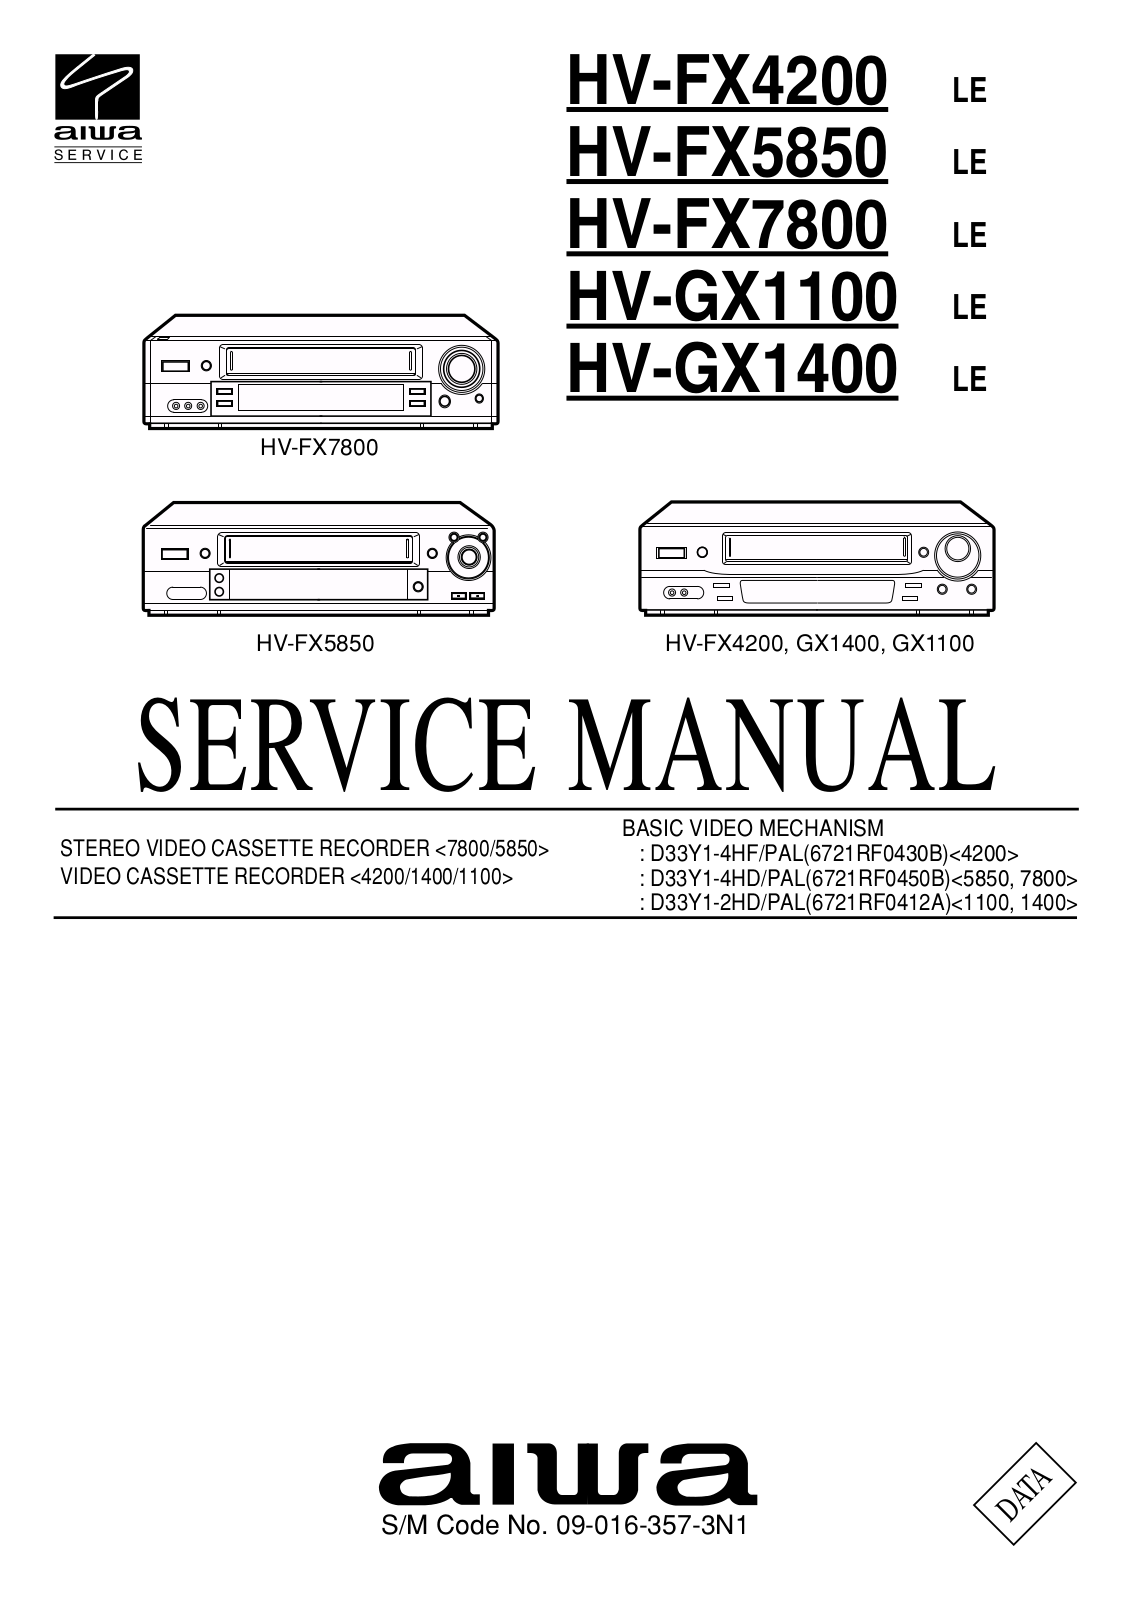 Aiwa HV-FX4200, HV-FX5850, HV-GX1100, HV-GX1400 Service Manual